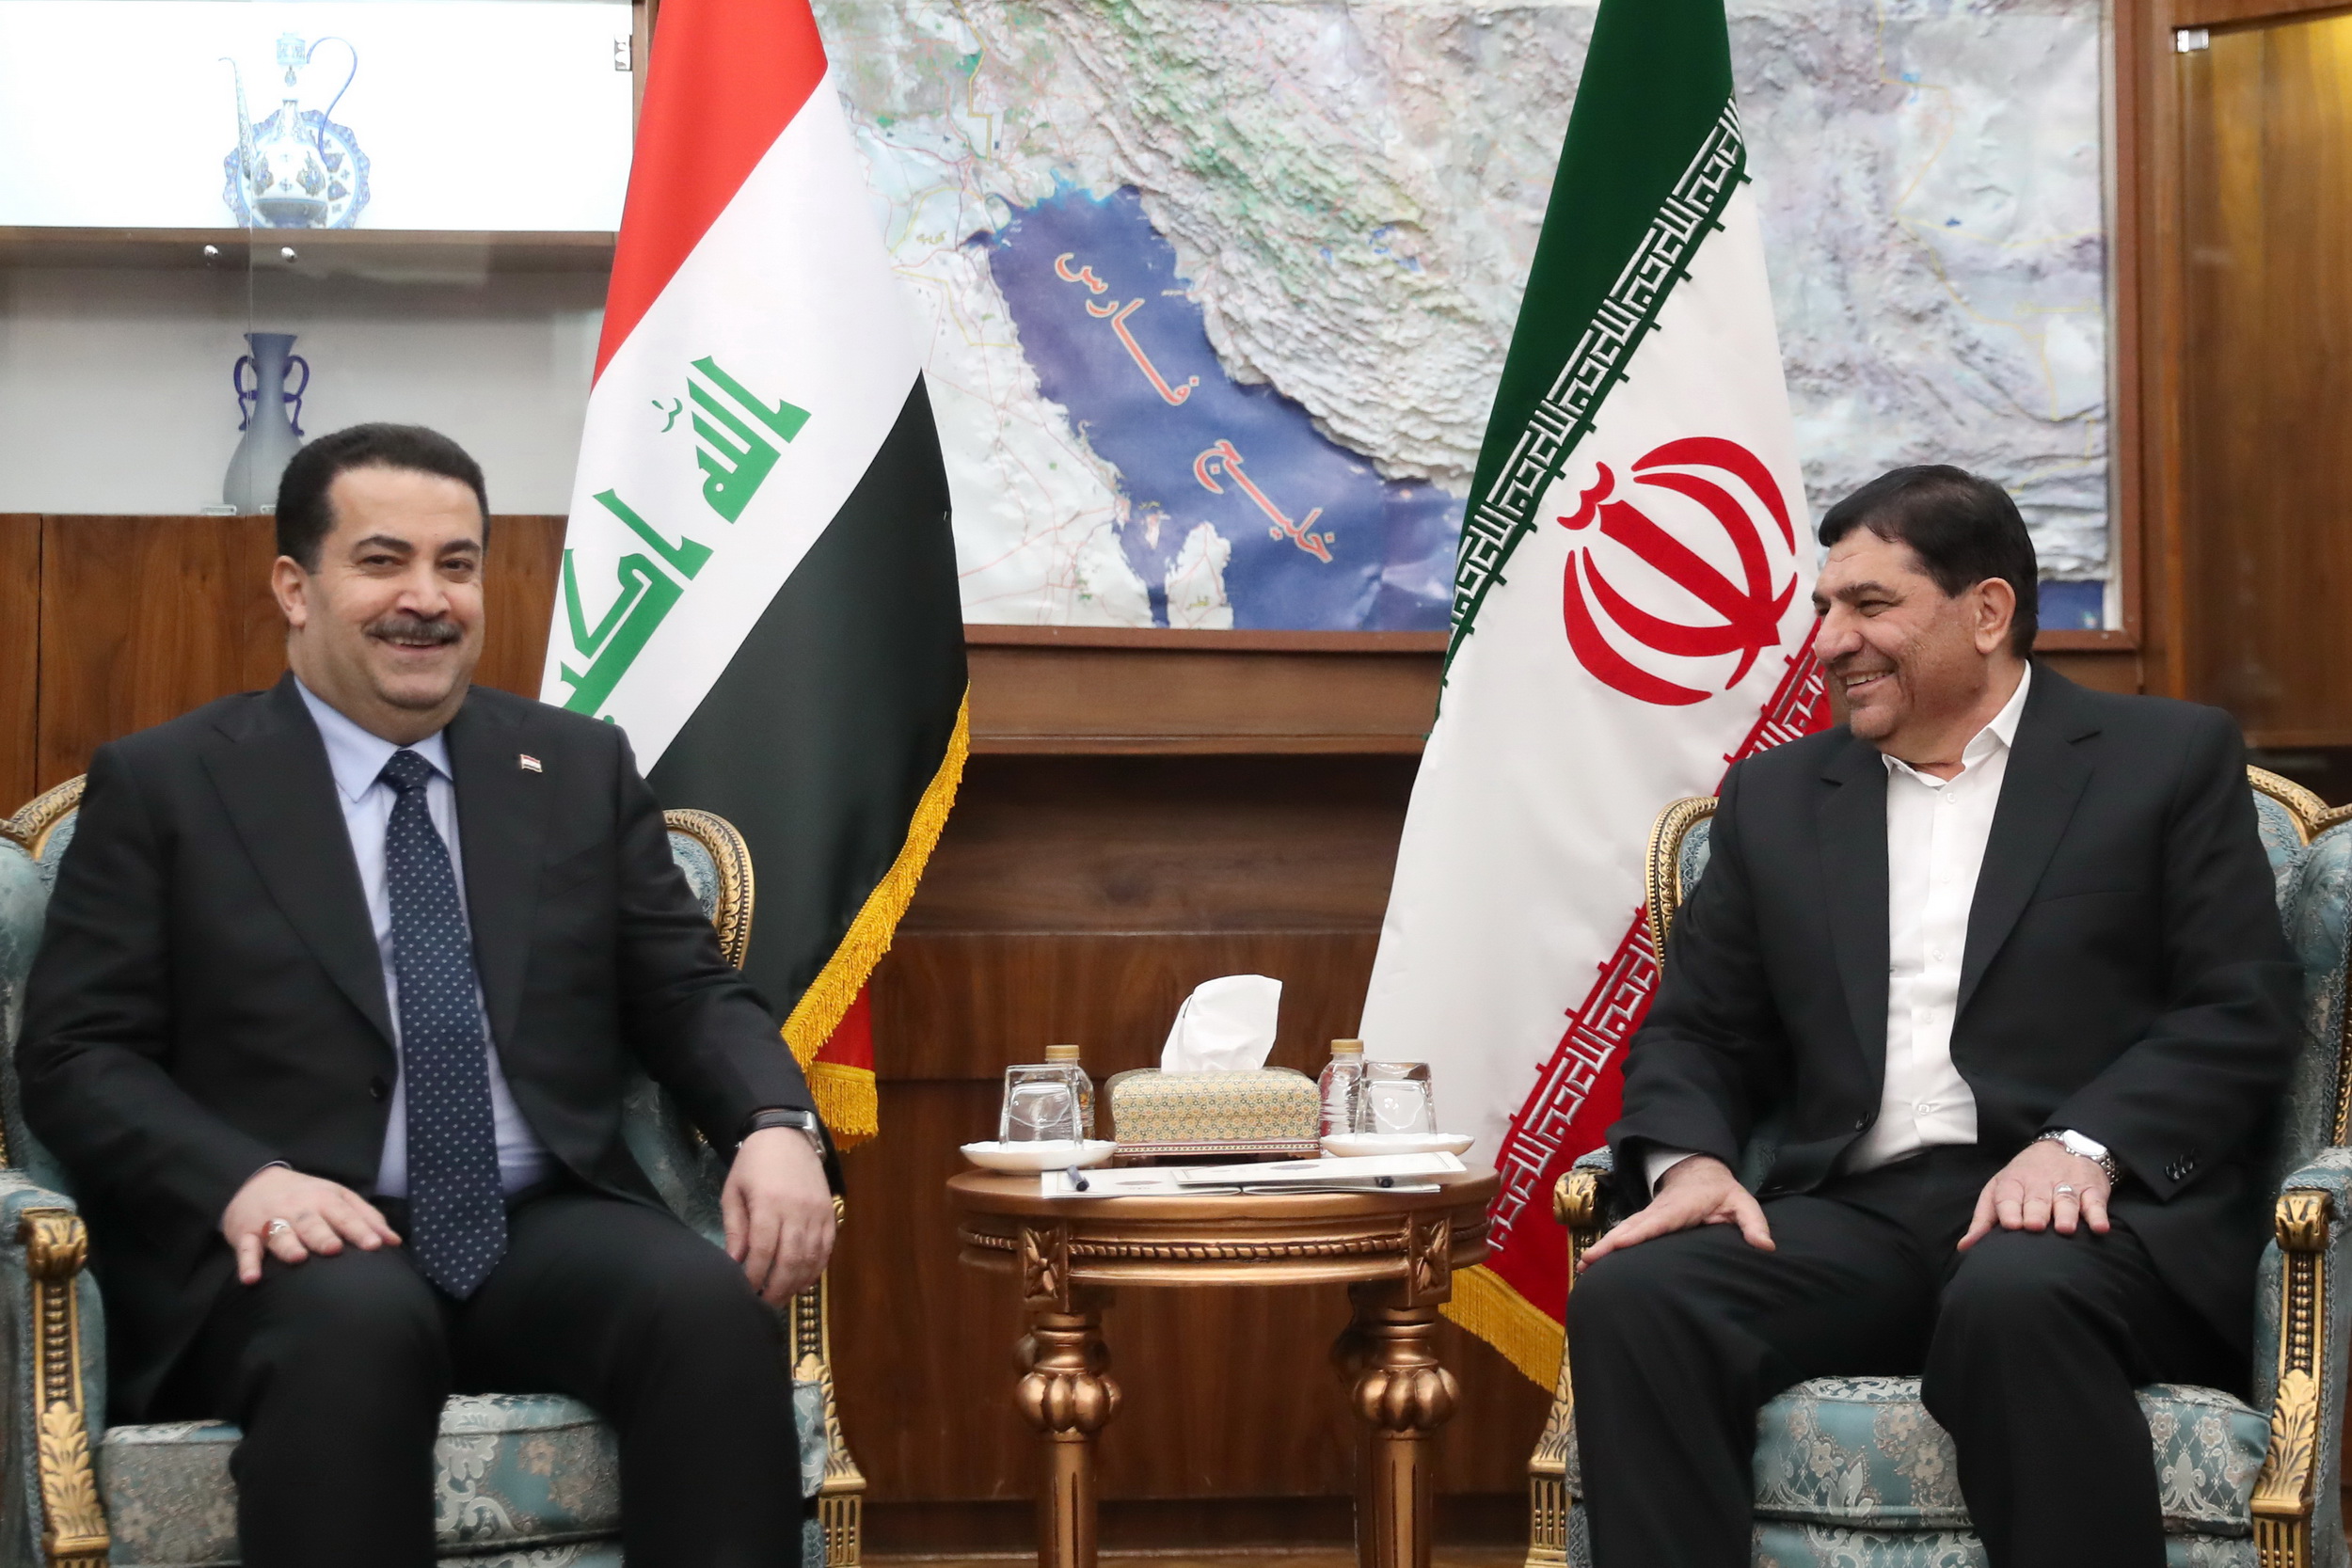 محمد مخبر: مناسبات اقتصادی دو کشور باید بیش از پیش تقویت شود/ نخست وزیر عراق: امنیت ایران و عراق موضوعی واحد و جدایی ناپذیر است